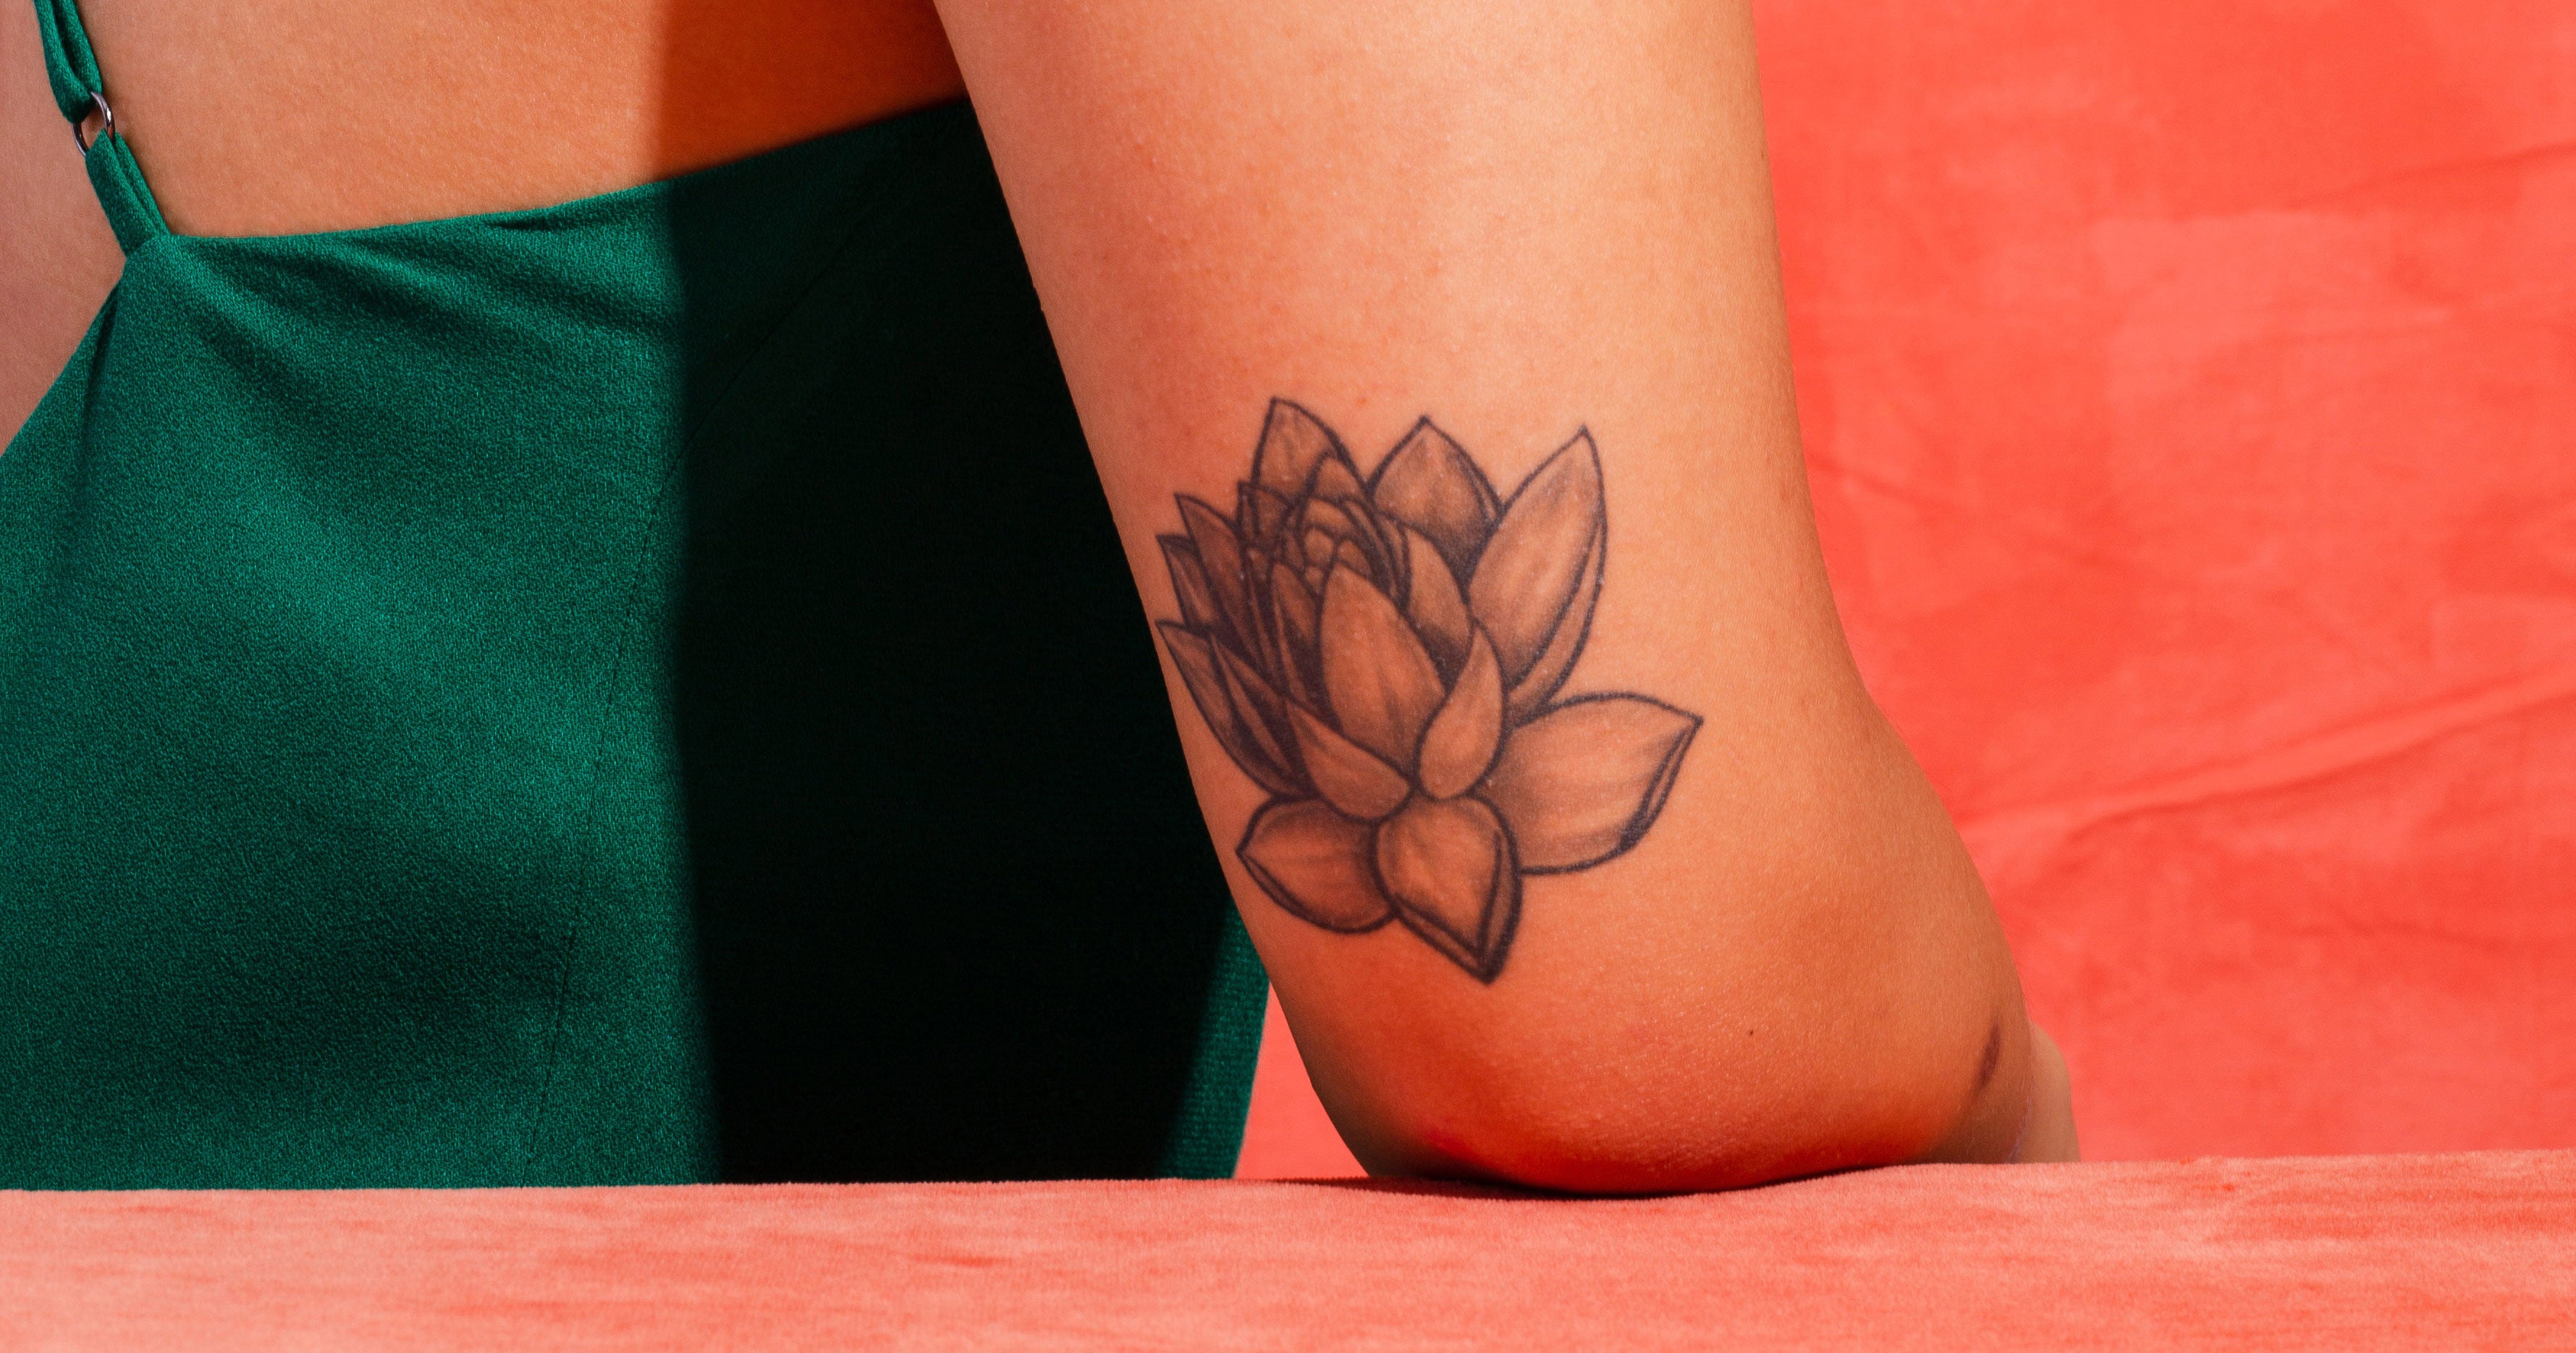 40 Inspiring Tattoo Ideas to Get After a Divorce  CafeMomcom